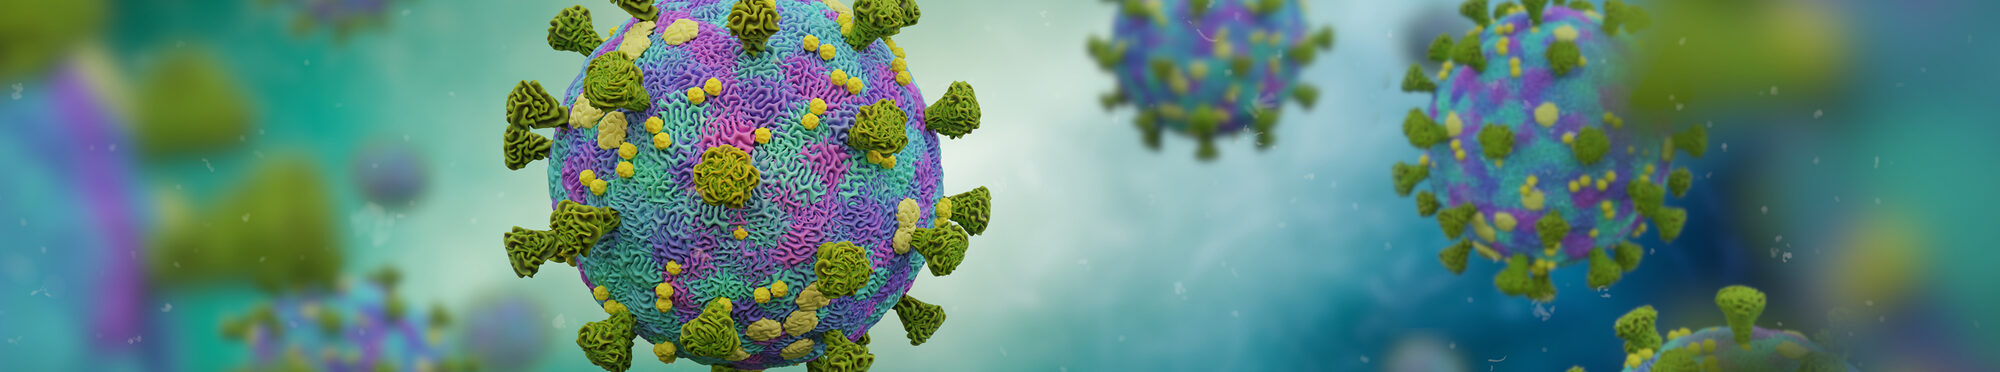 Motivbild Coronavirus